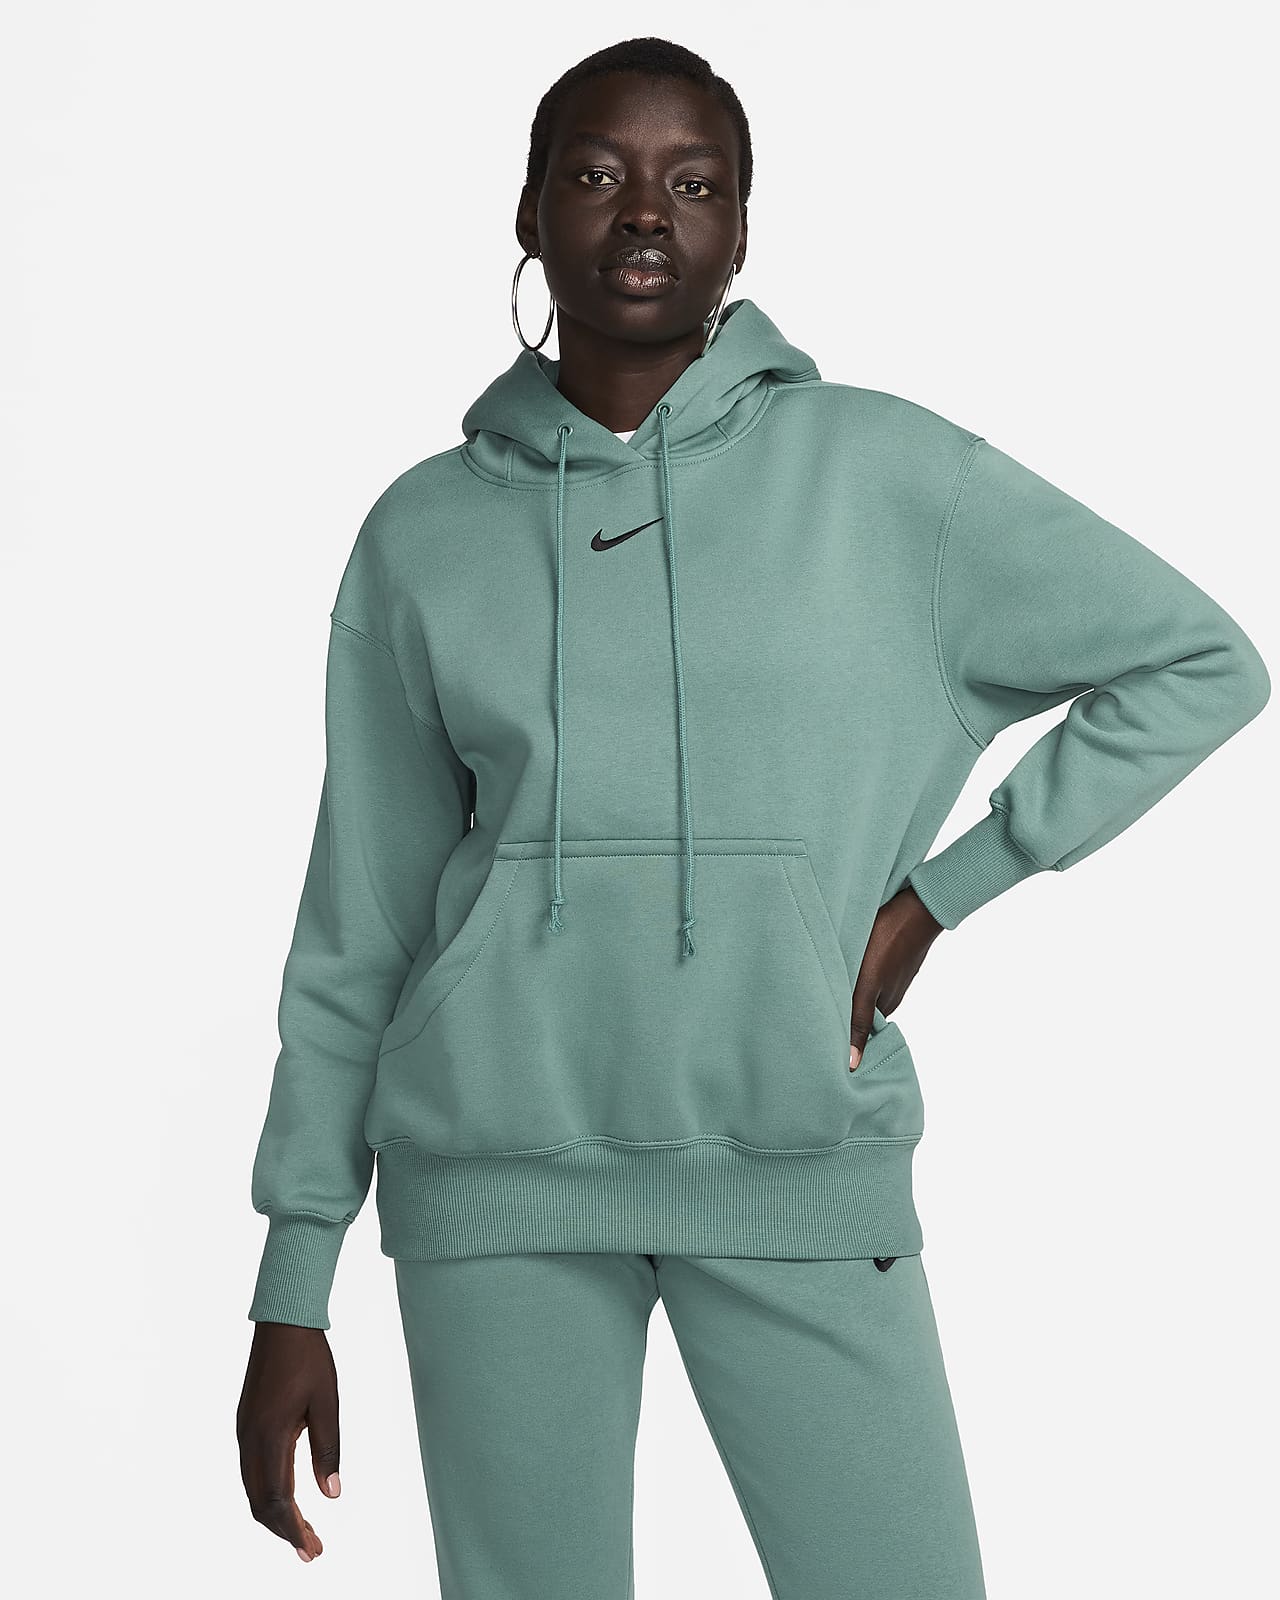 Γυναικείο φούτερ με κουκούλα σε φαρδιά γραμμή Nike Sportswear Phoenix